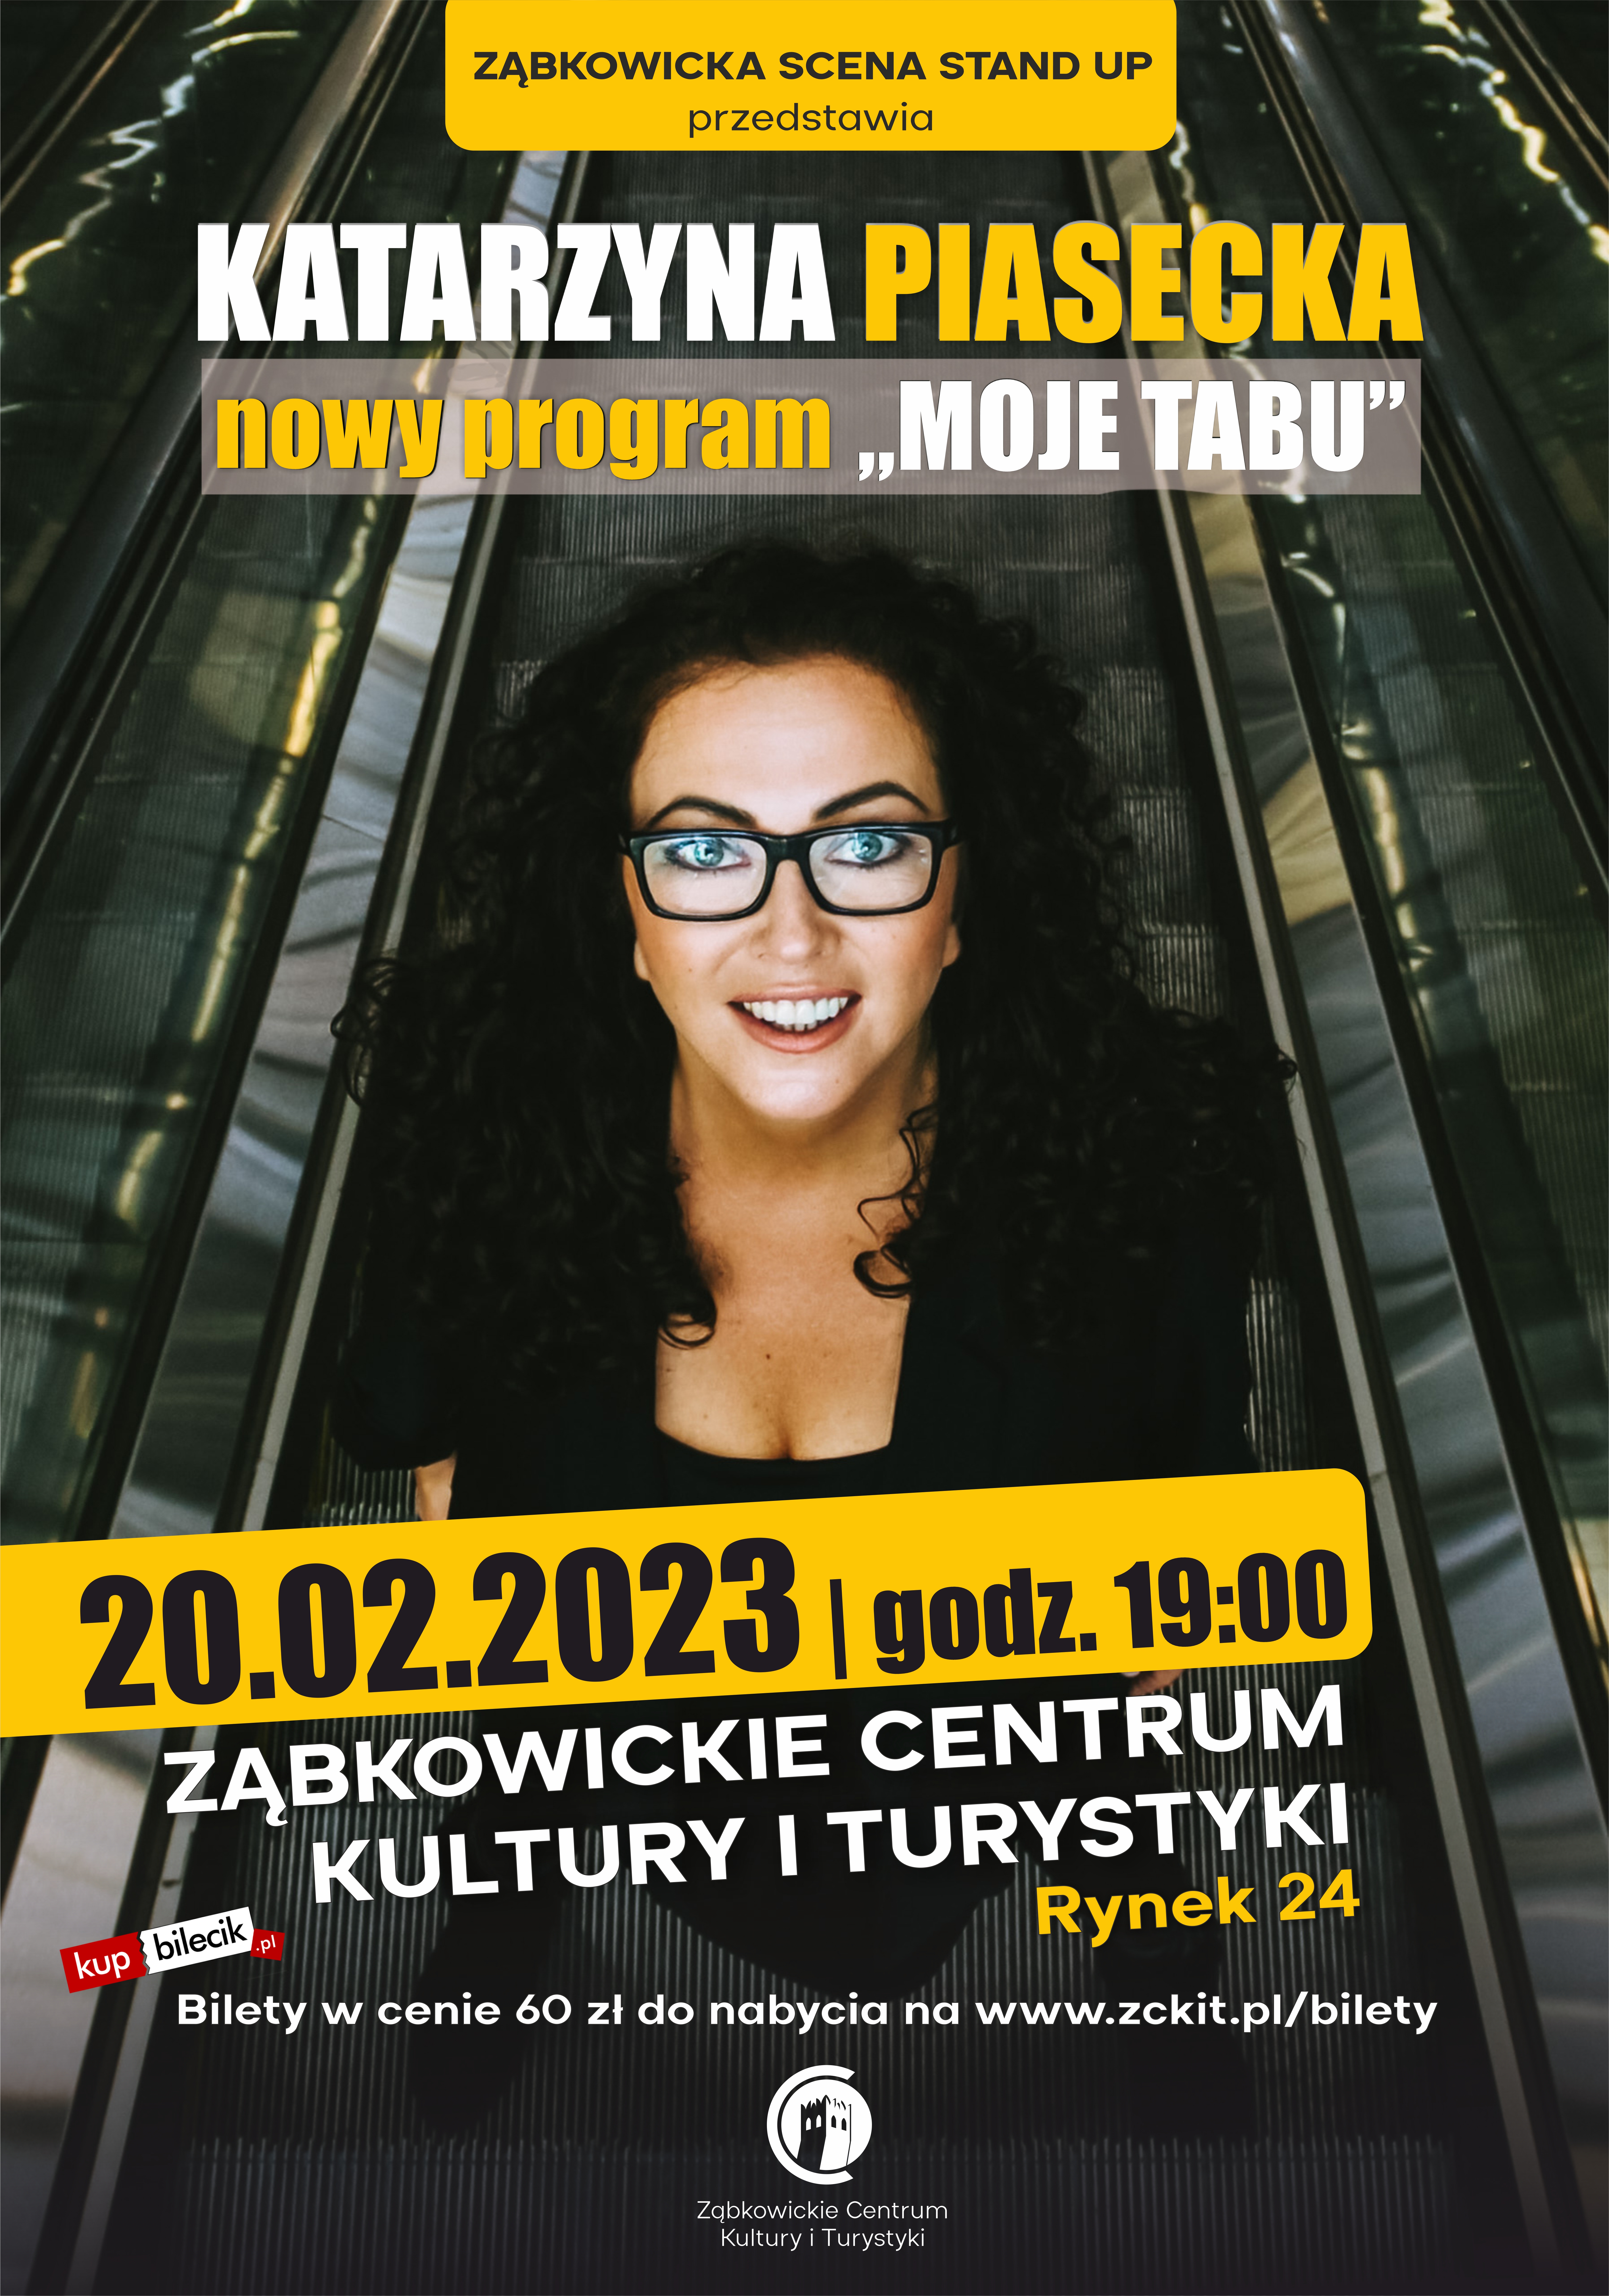 Plakat informacyjny o stand upie Katarzyny Piaseckiej "Moje tabu" 20 lutego 2023 o godzinie 19:00 w Ząbkowickim Centrum Kultury i Turystyki.